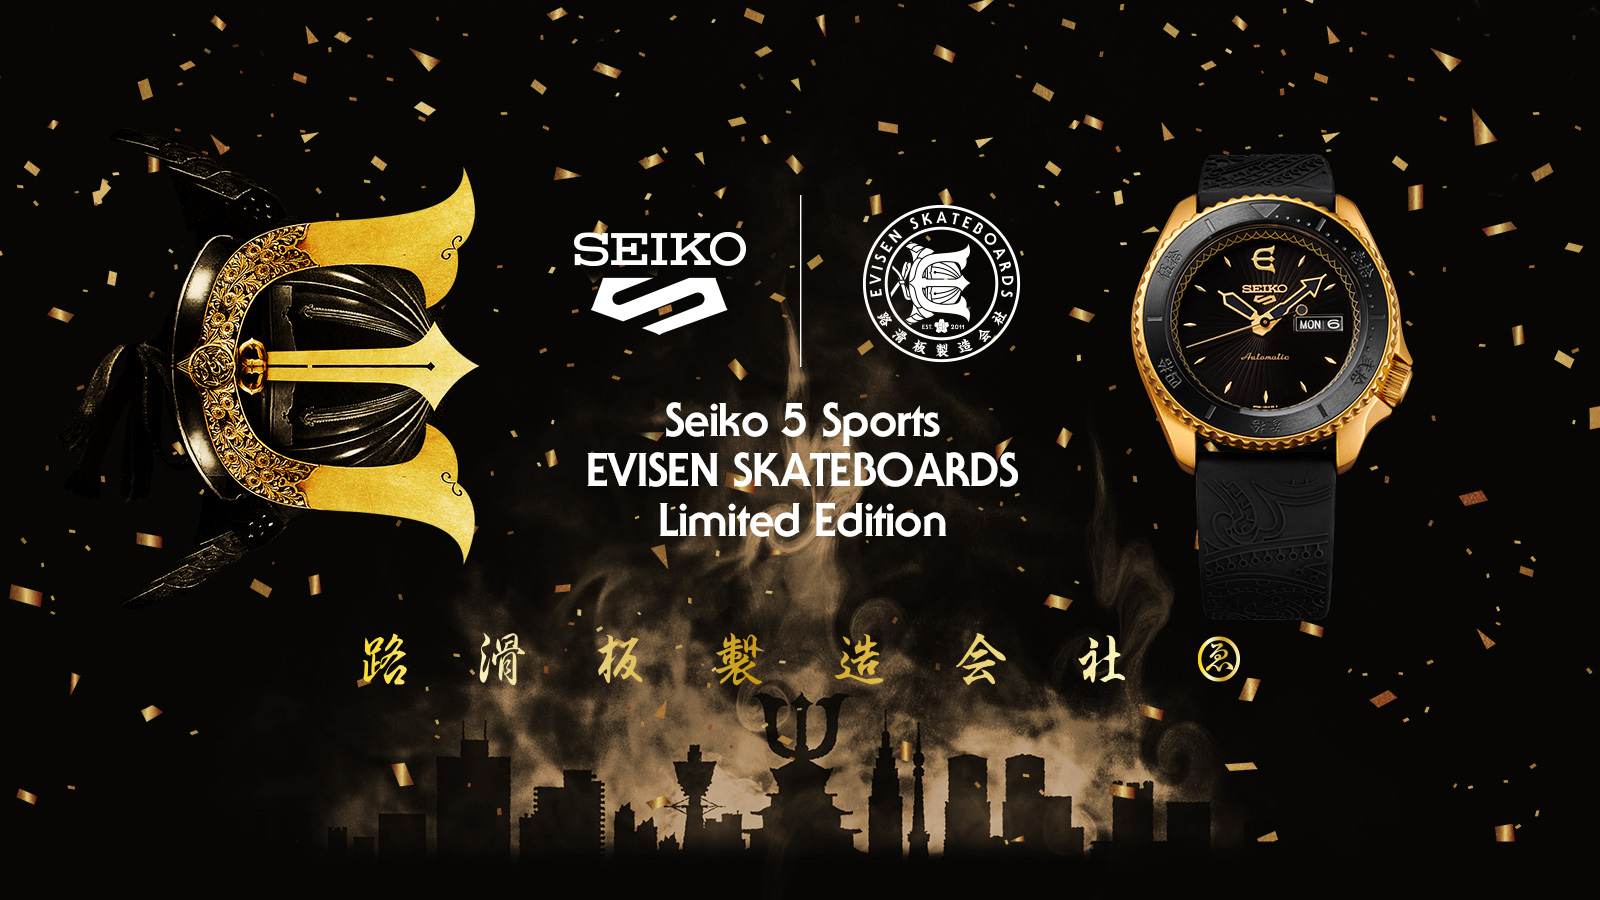 セイコー 5スポーツ より 世界から注目される日本のスケートボードブランド Evisen Skateboards とのコラボレーション限定モデルを発売 セイコーウオッチ株式会社のプレスリリース